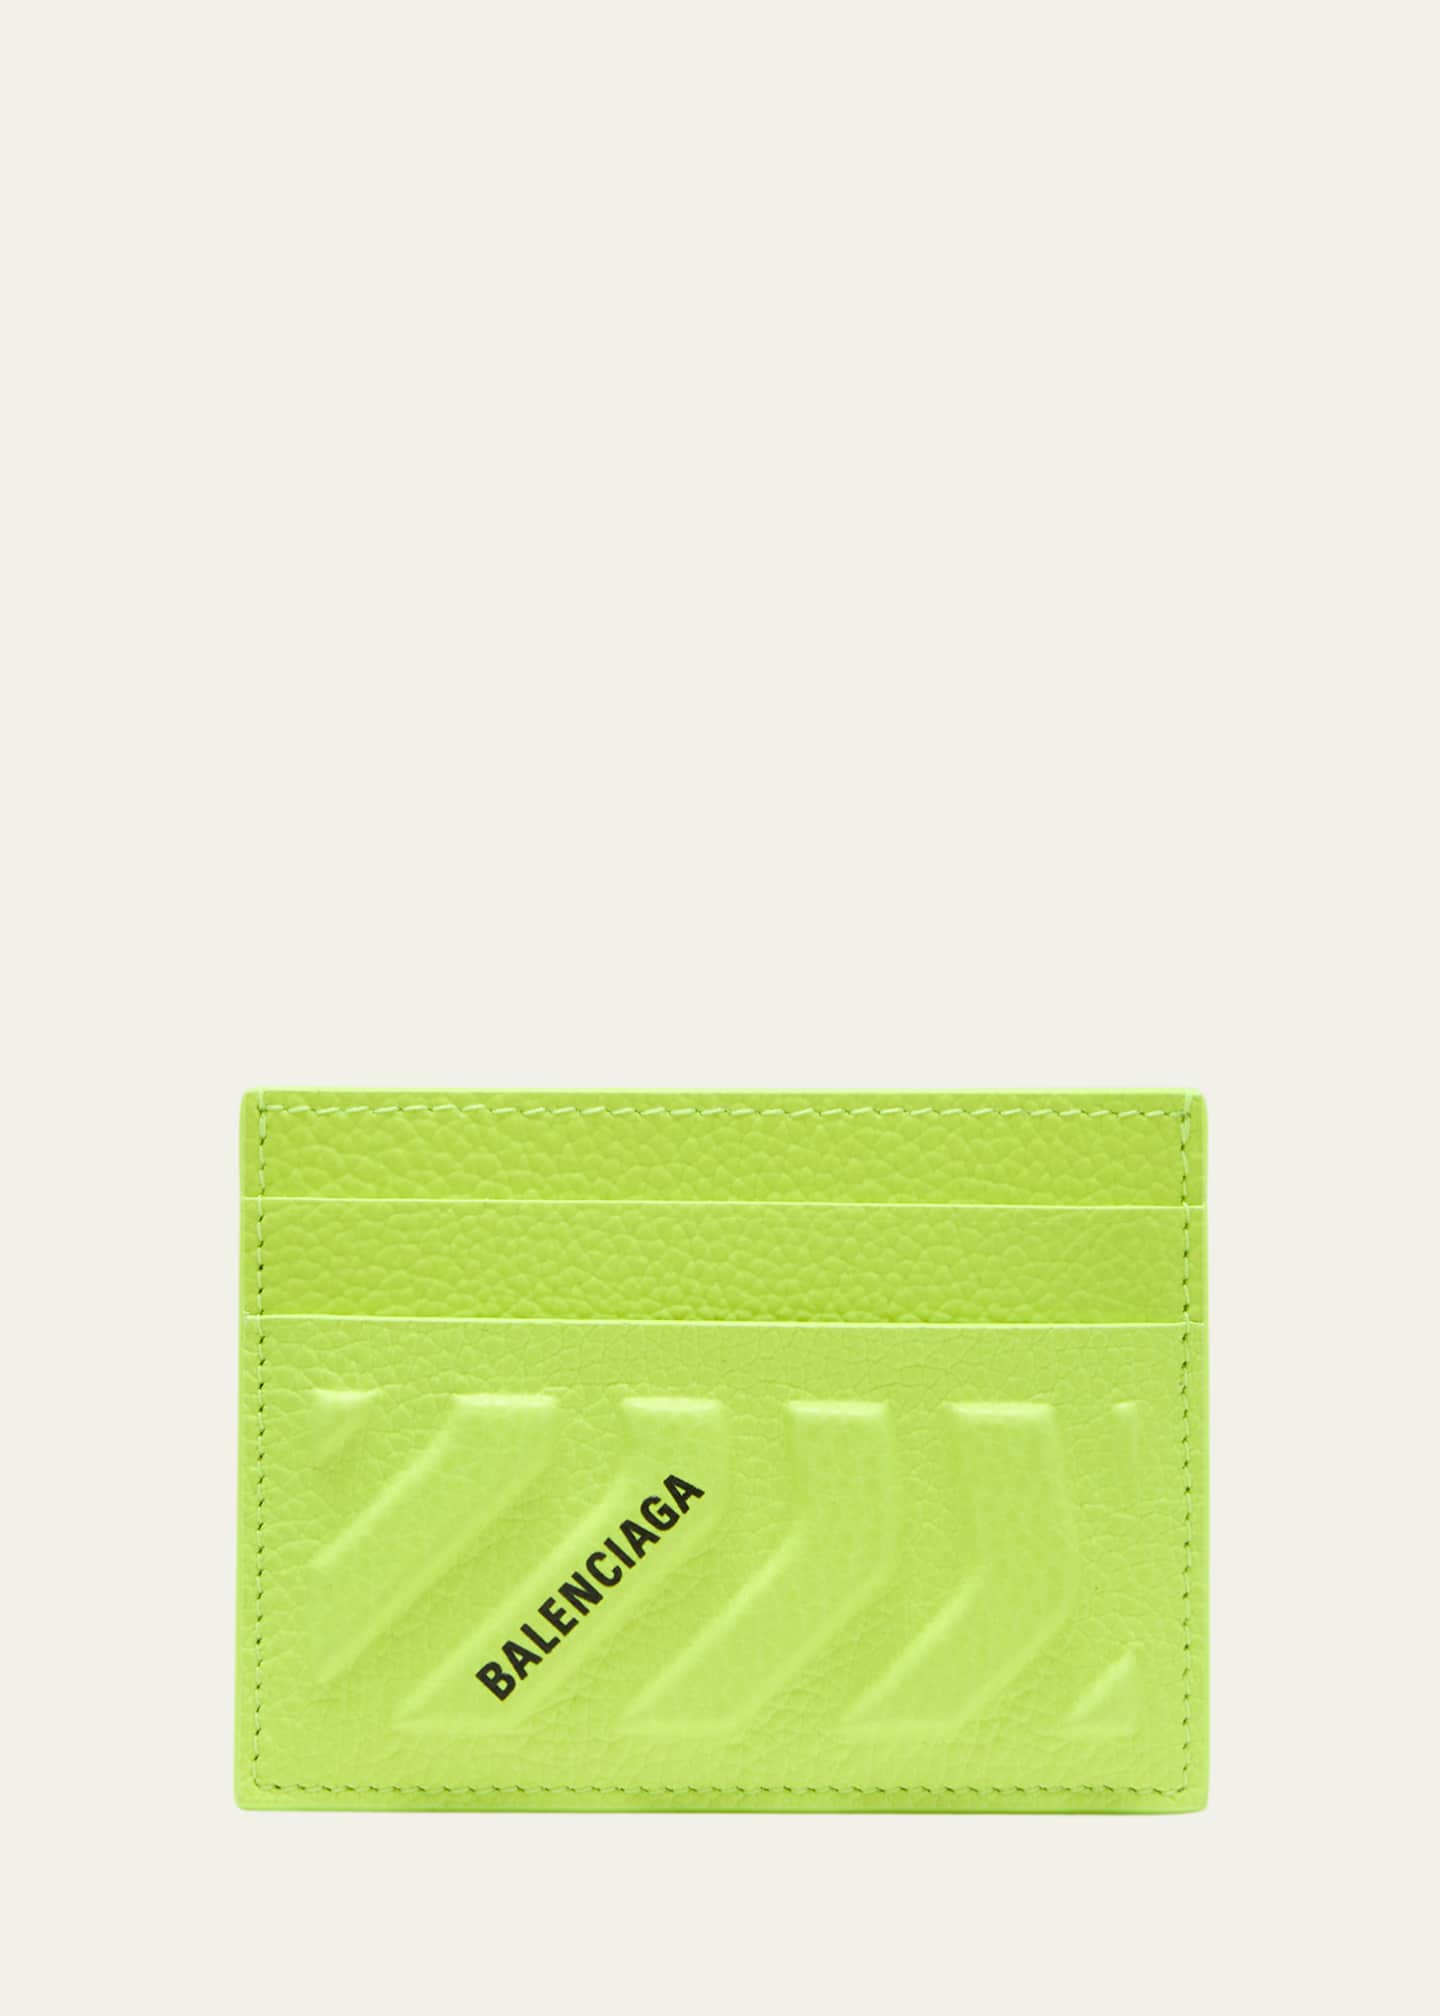 Balenciaga Men's Car Card Holder - Bergdorf Goodman